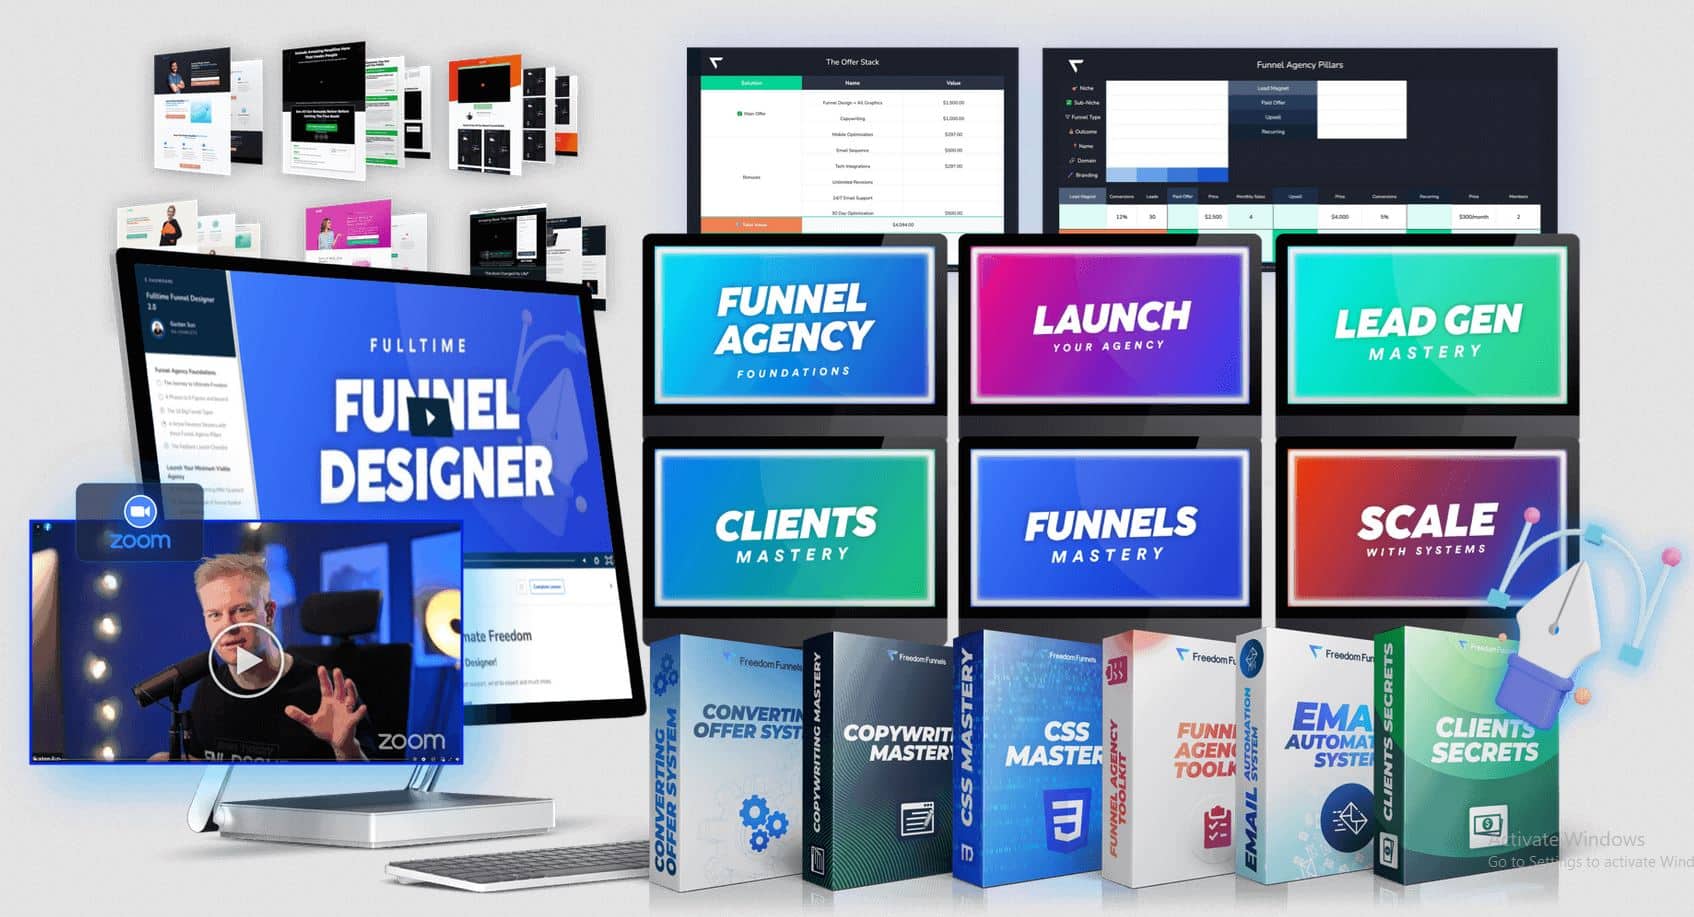 Fulltime Funnel Designer 3.0